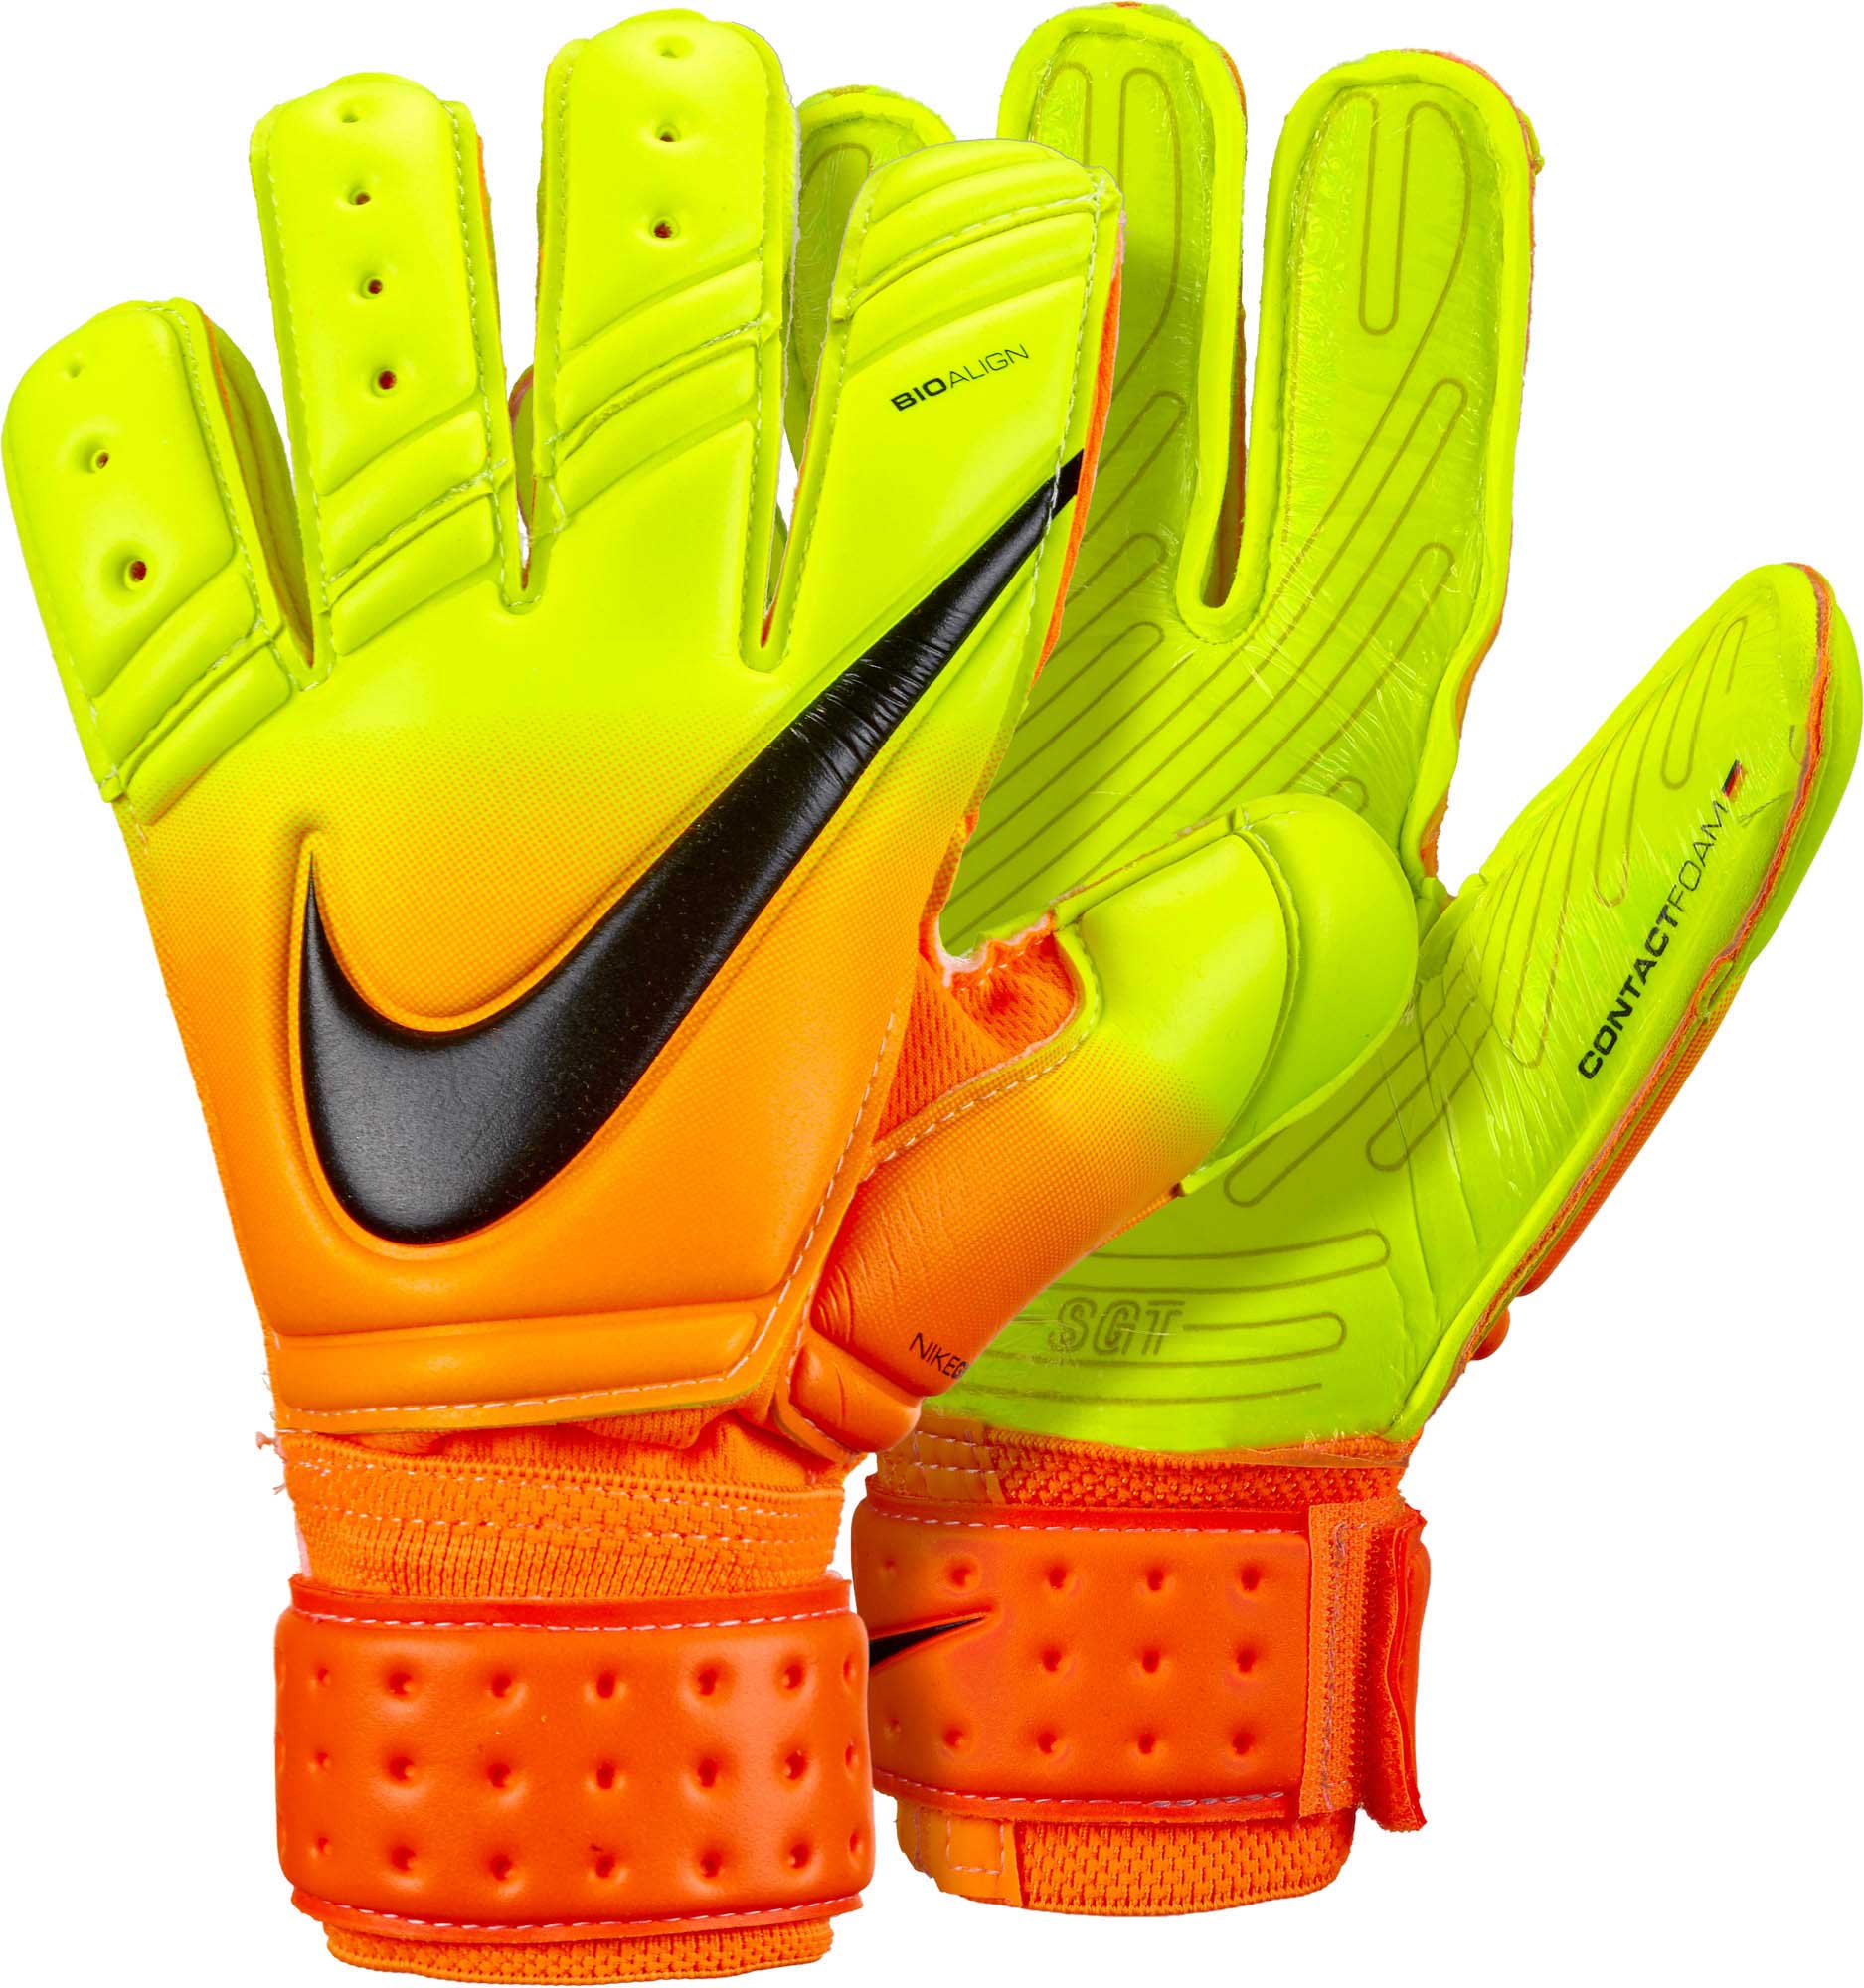 Gs0326 810 Nike Premier Sgt Gk Gloves 01 